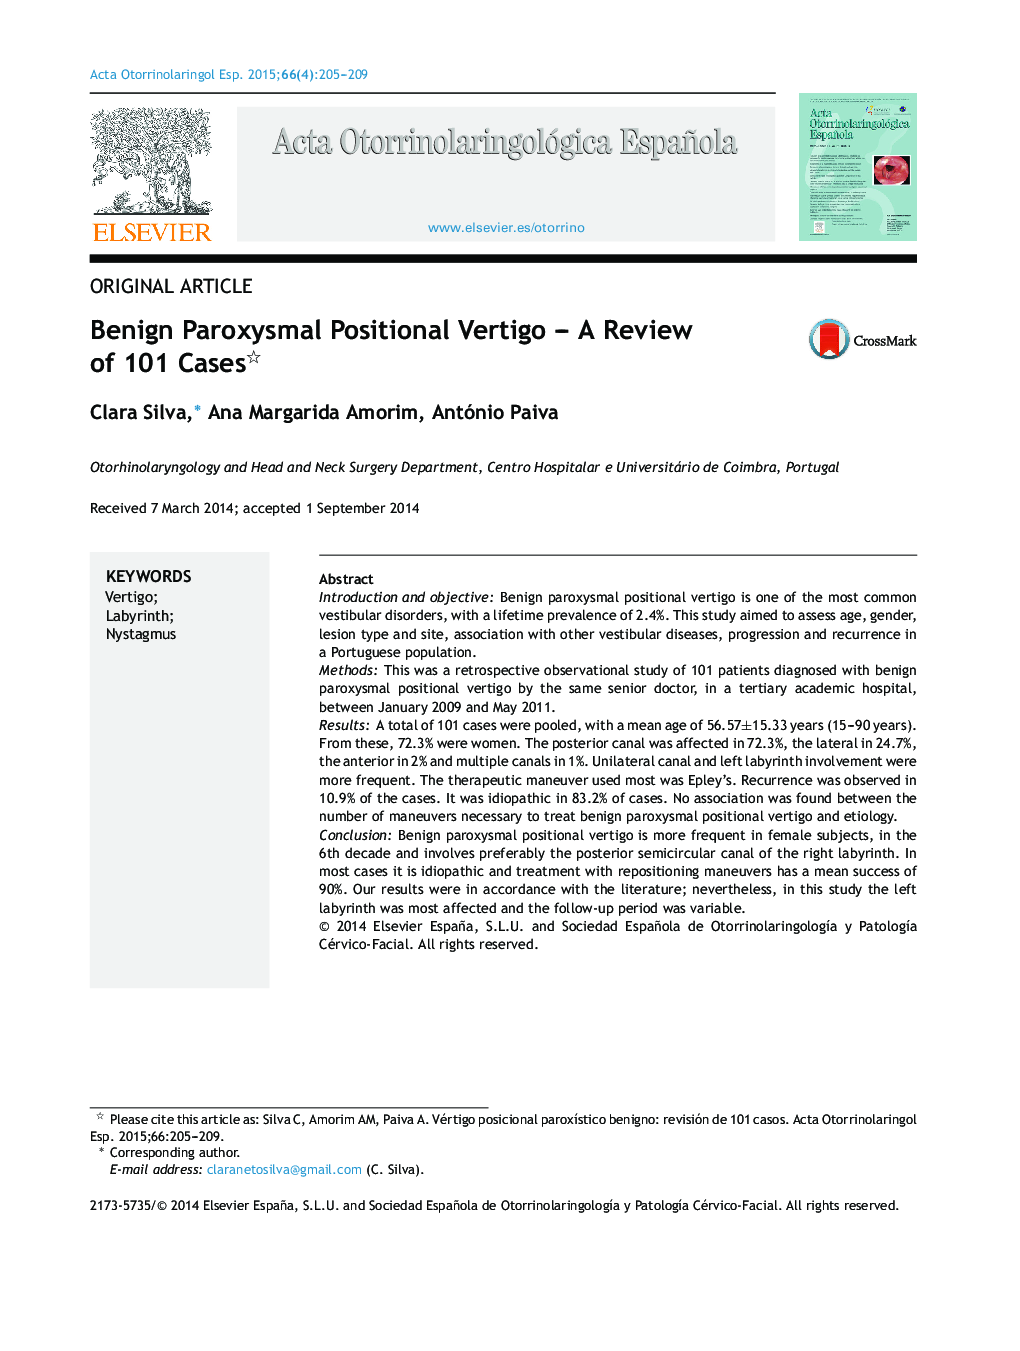 Benign Paroxysmal Positional Vertigo – A Review of 101 Cases 